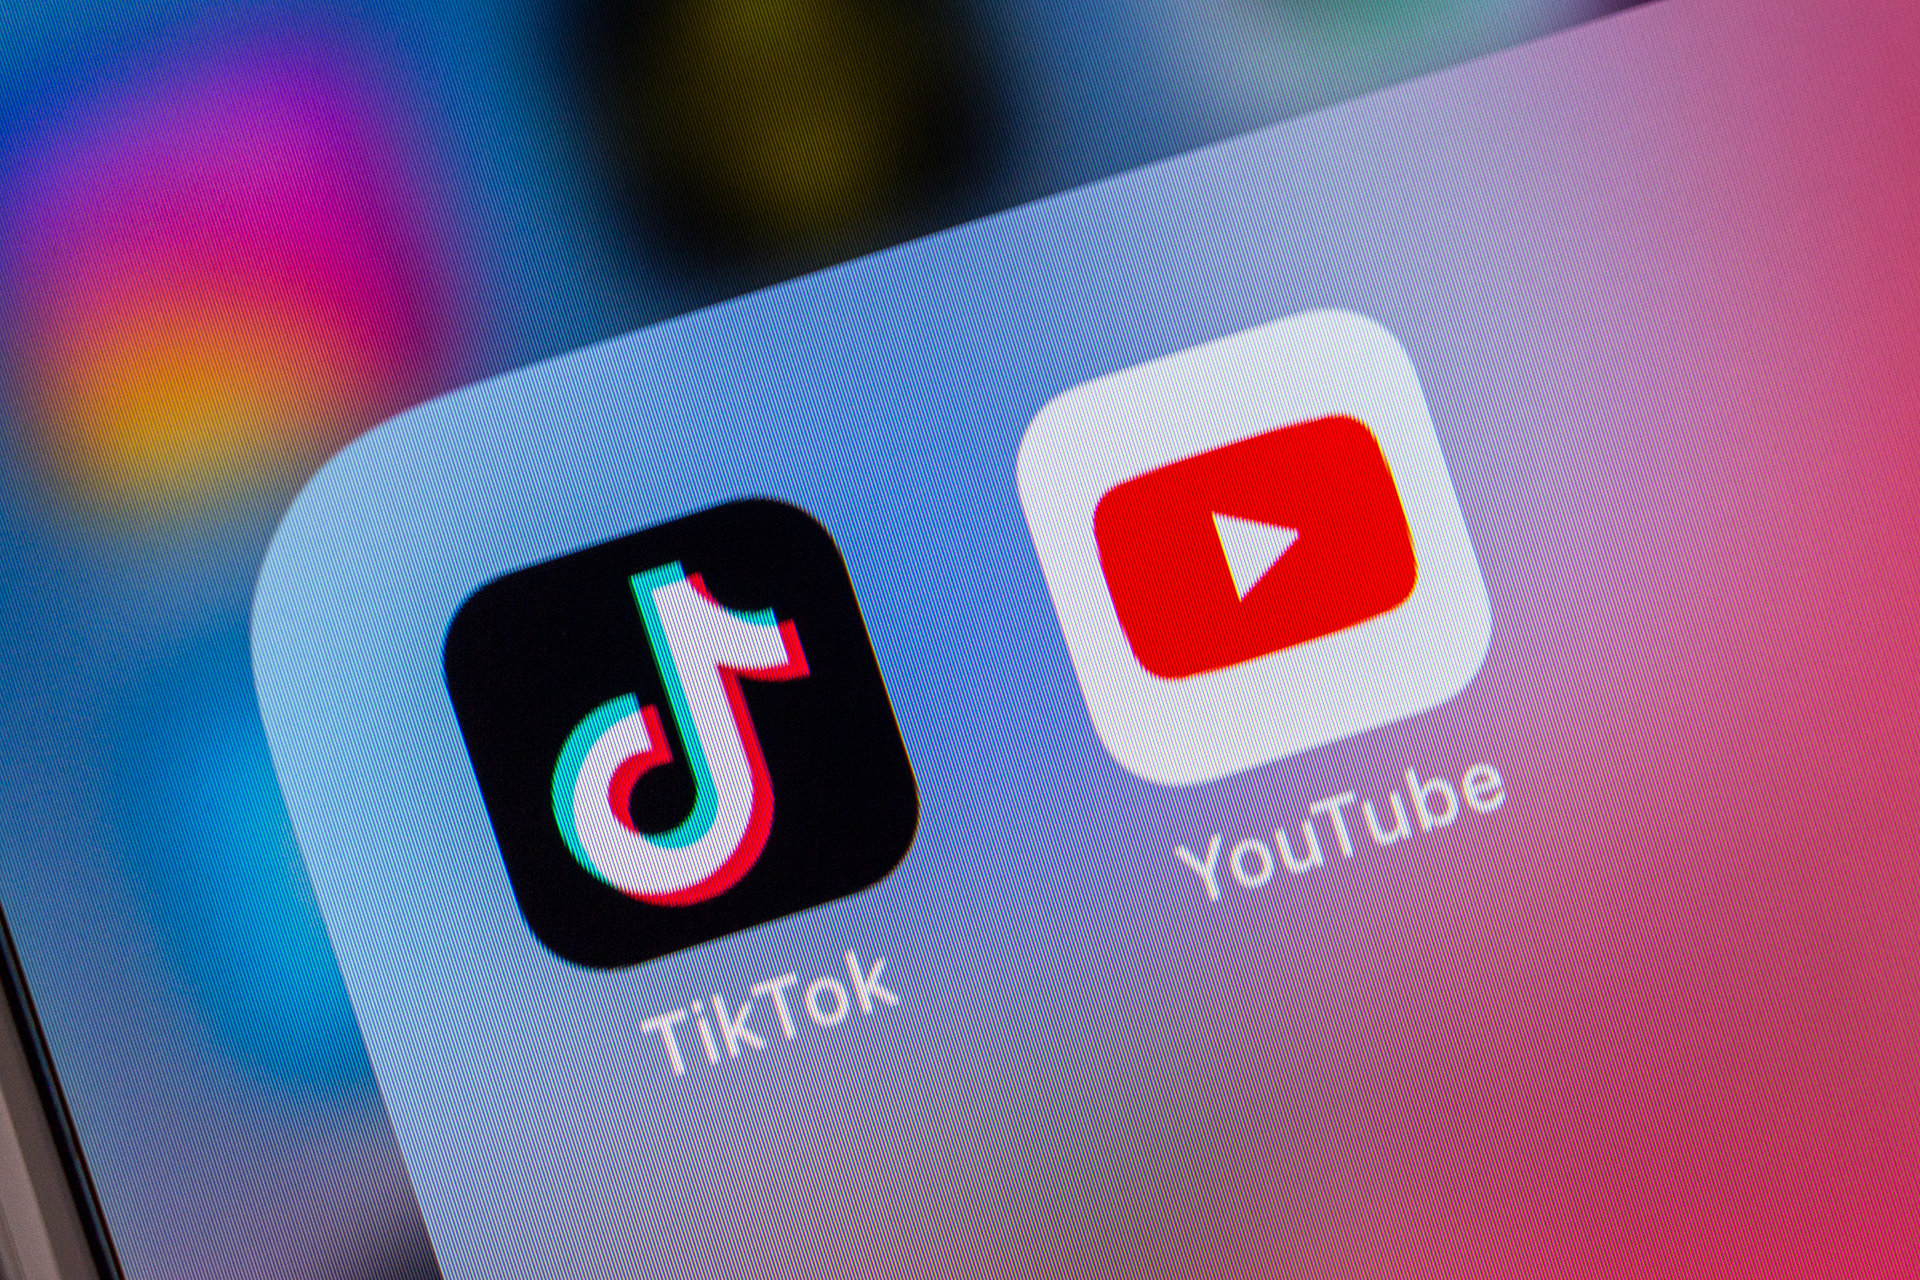 Verwandelt sich TikTok nun zu YouTube?